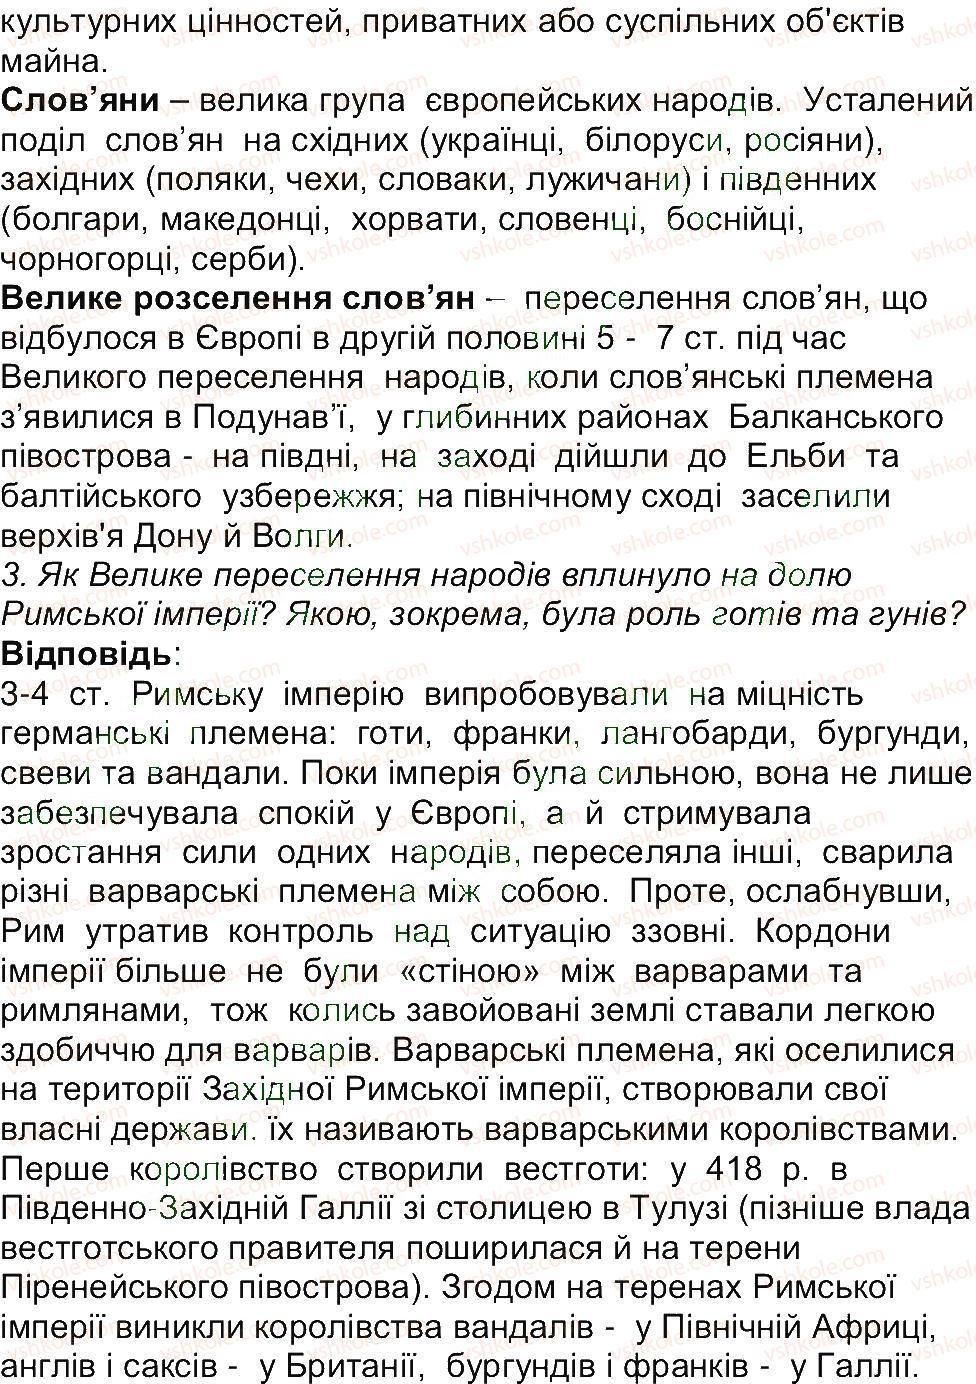 6-istoriya-og-bandrovskij-vs-vlasov-2014--storinki-201-270-269-rnd8700.jpg